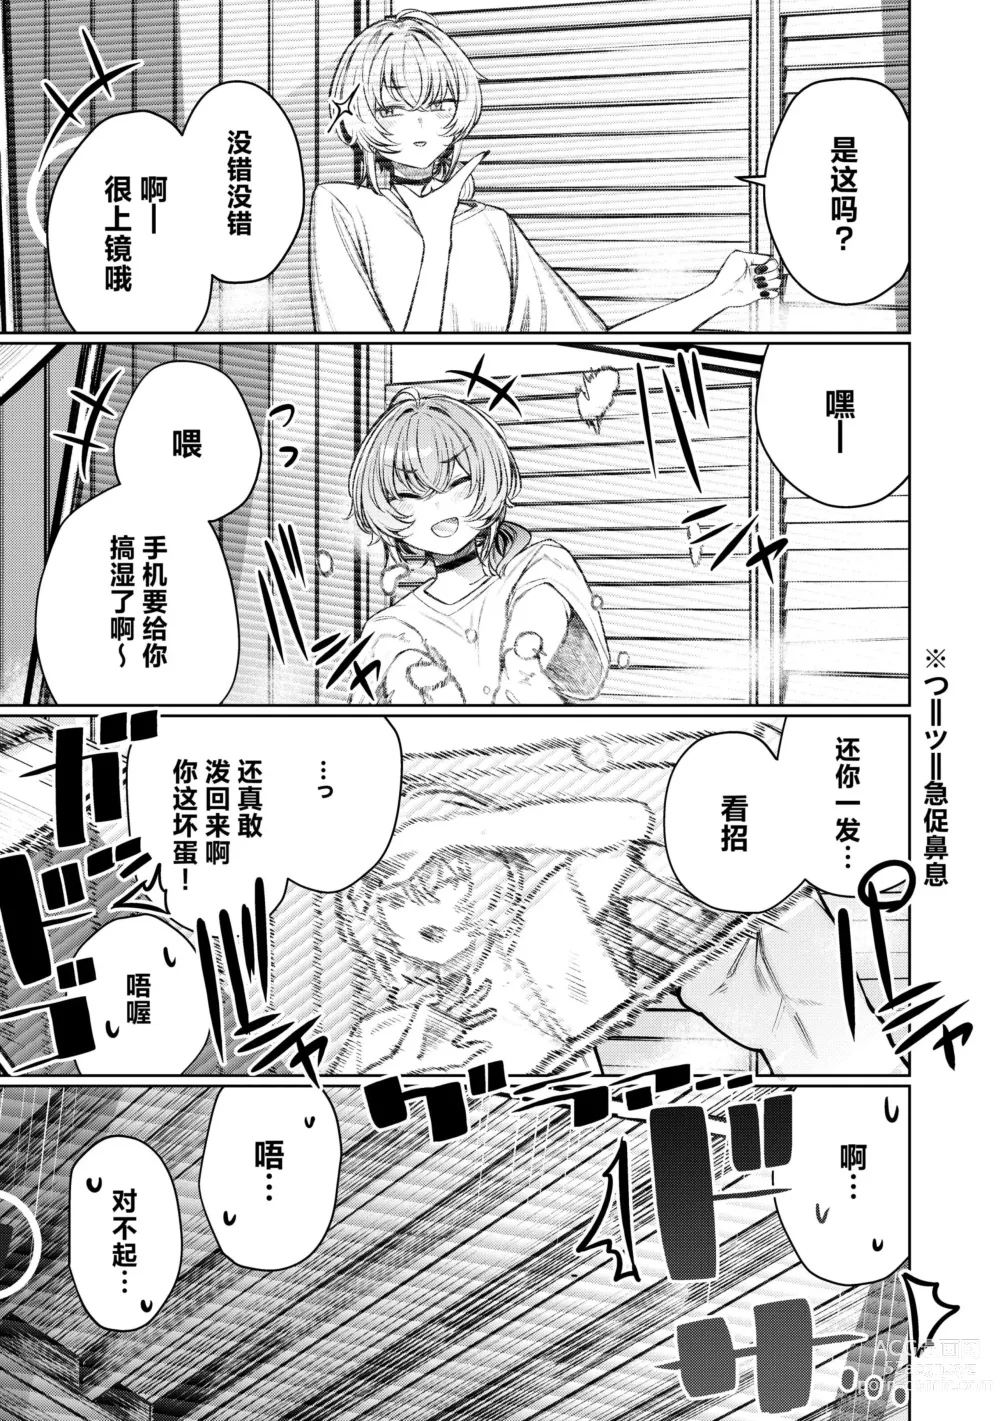 Page 9 of doujinshi Furyouppoi Kanojo to Daradara Hamedori Shitai.